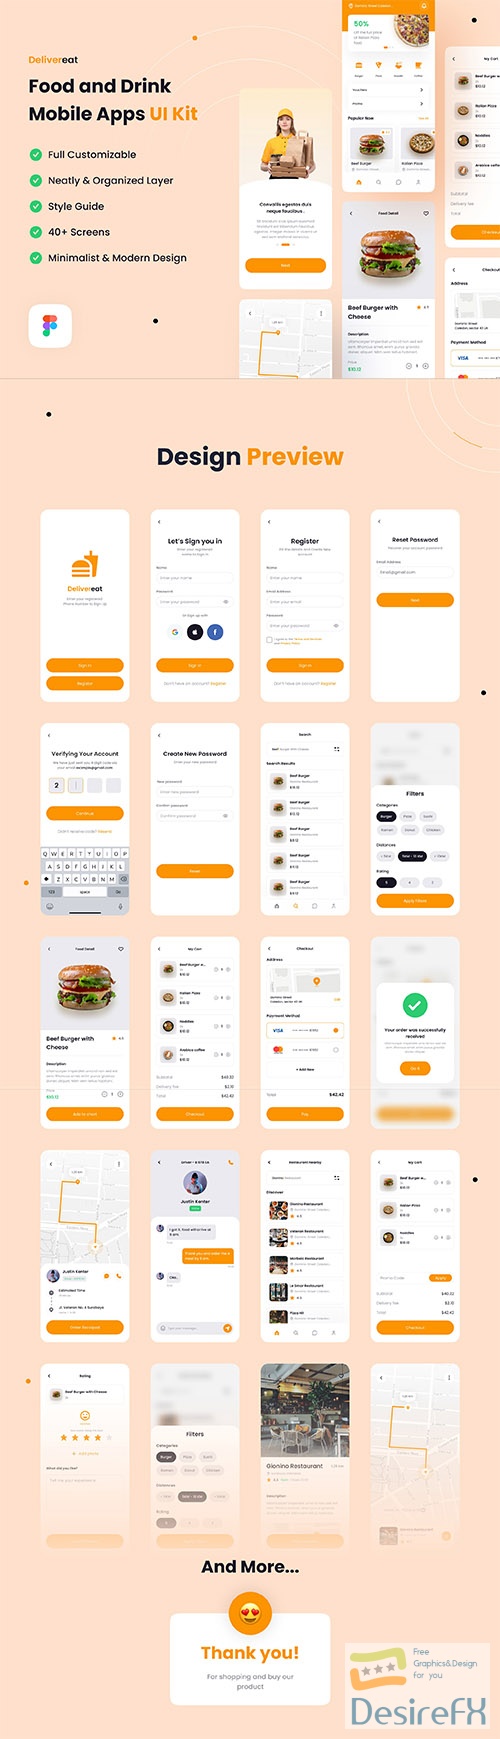 Delivereat - Food and Drink Mobile Apps UI Kit UI8